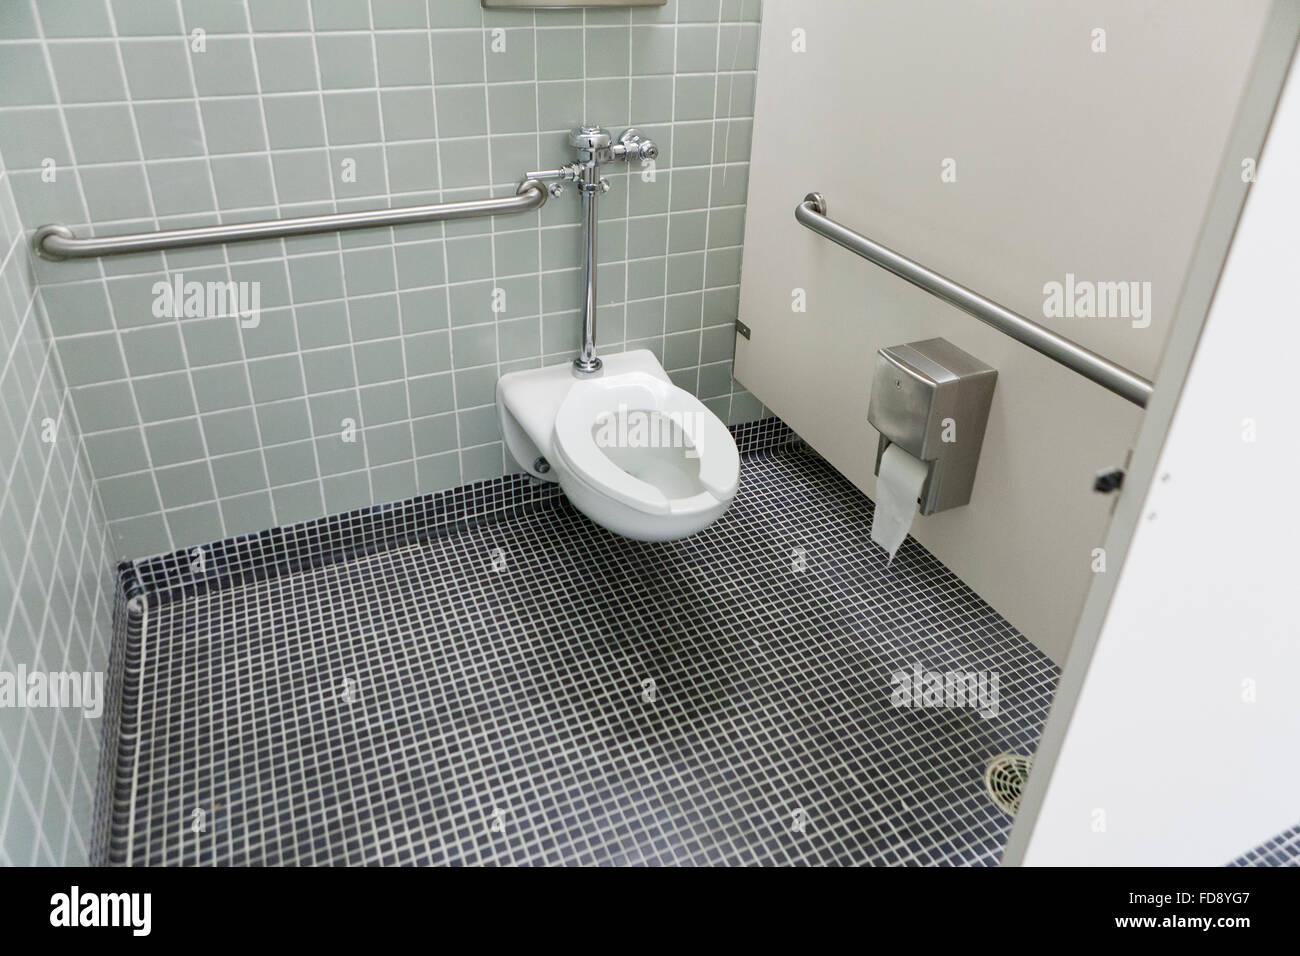 Accesible wc en baño público - EE.UU. Foto de stock